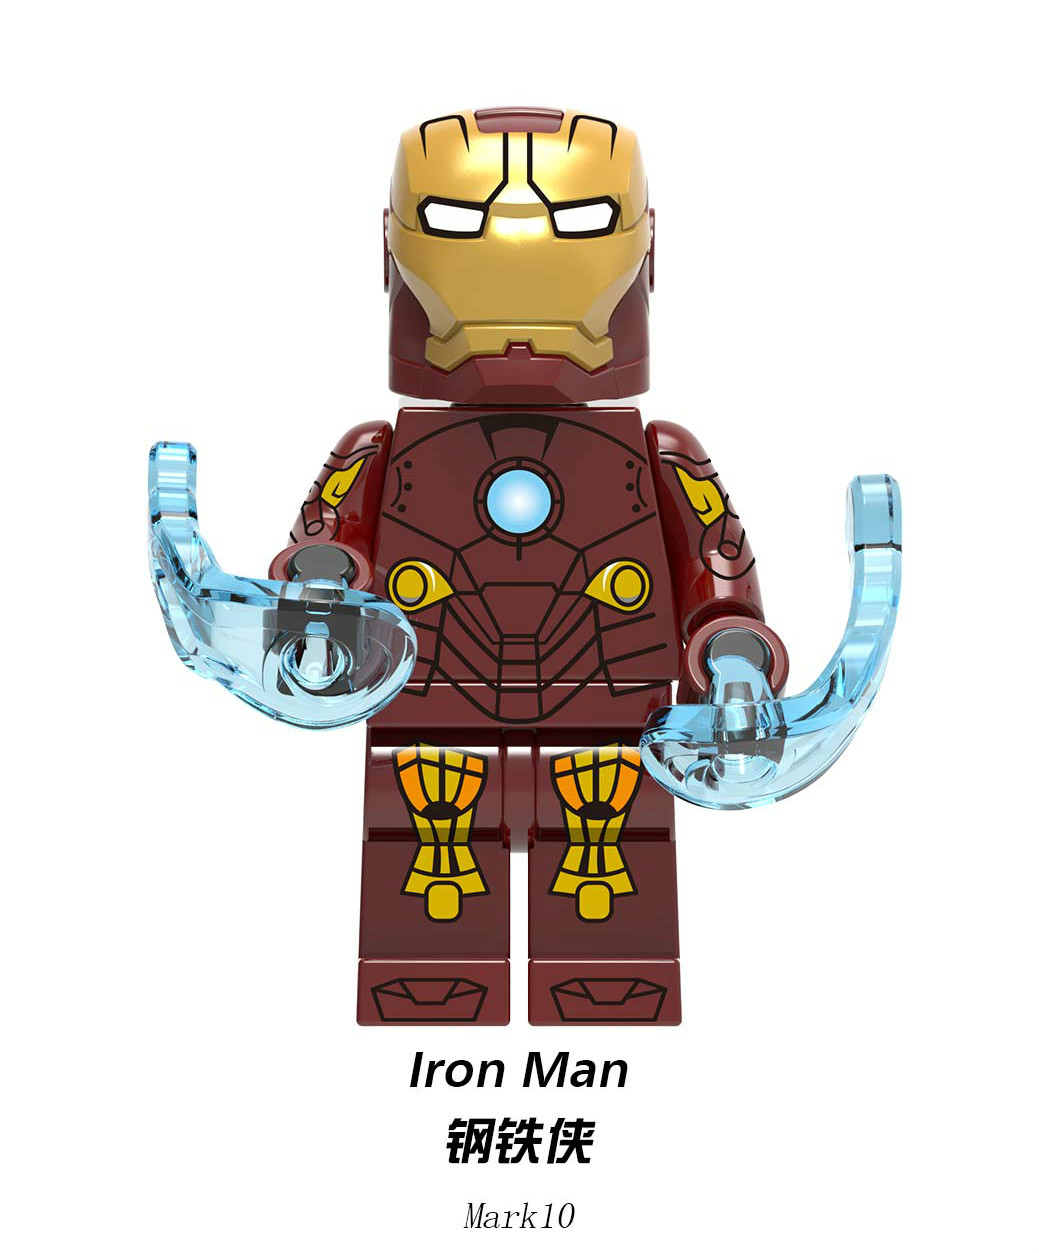 mark 10 iron man